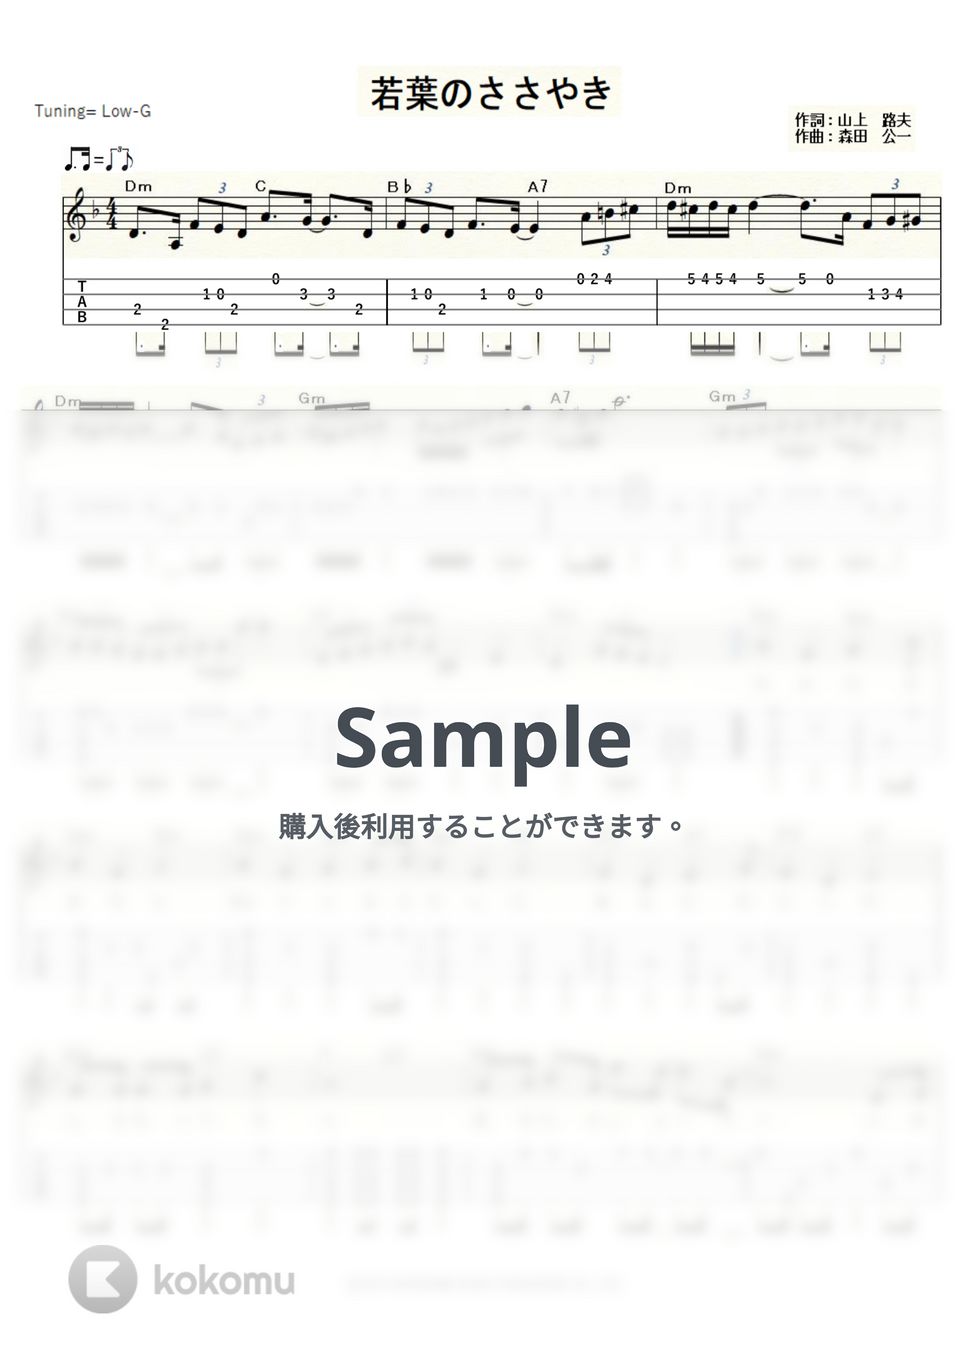 天地真理 - 若葉のささやき (ｳｸﾚﾚｿﾛ/Low-G/中級) by ukulelepapa